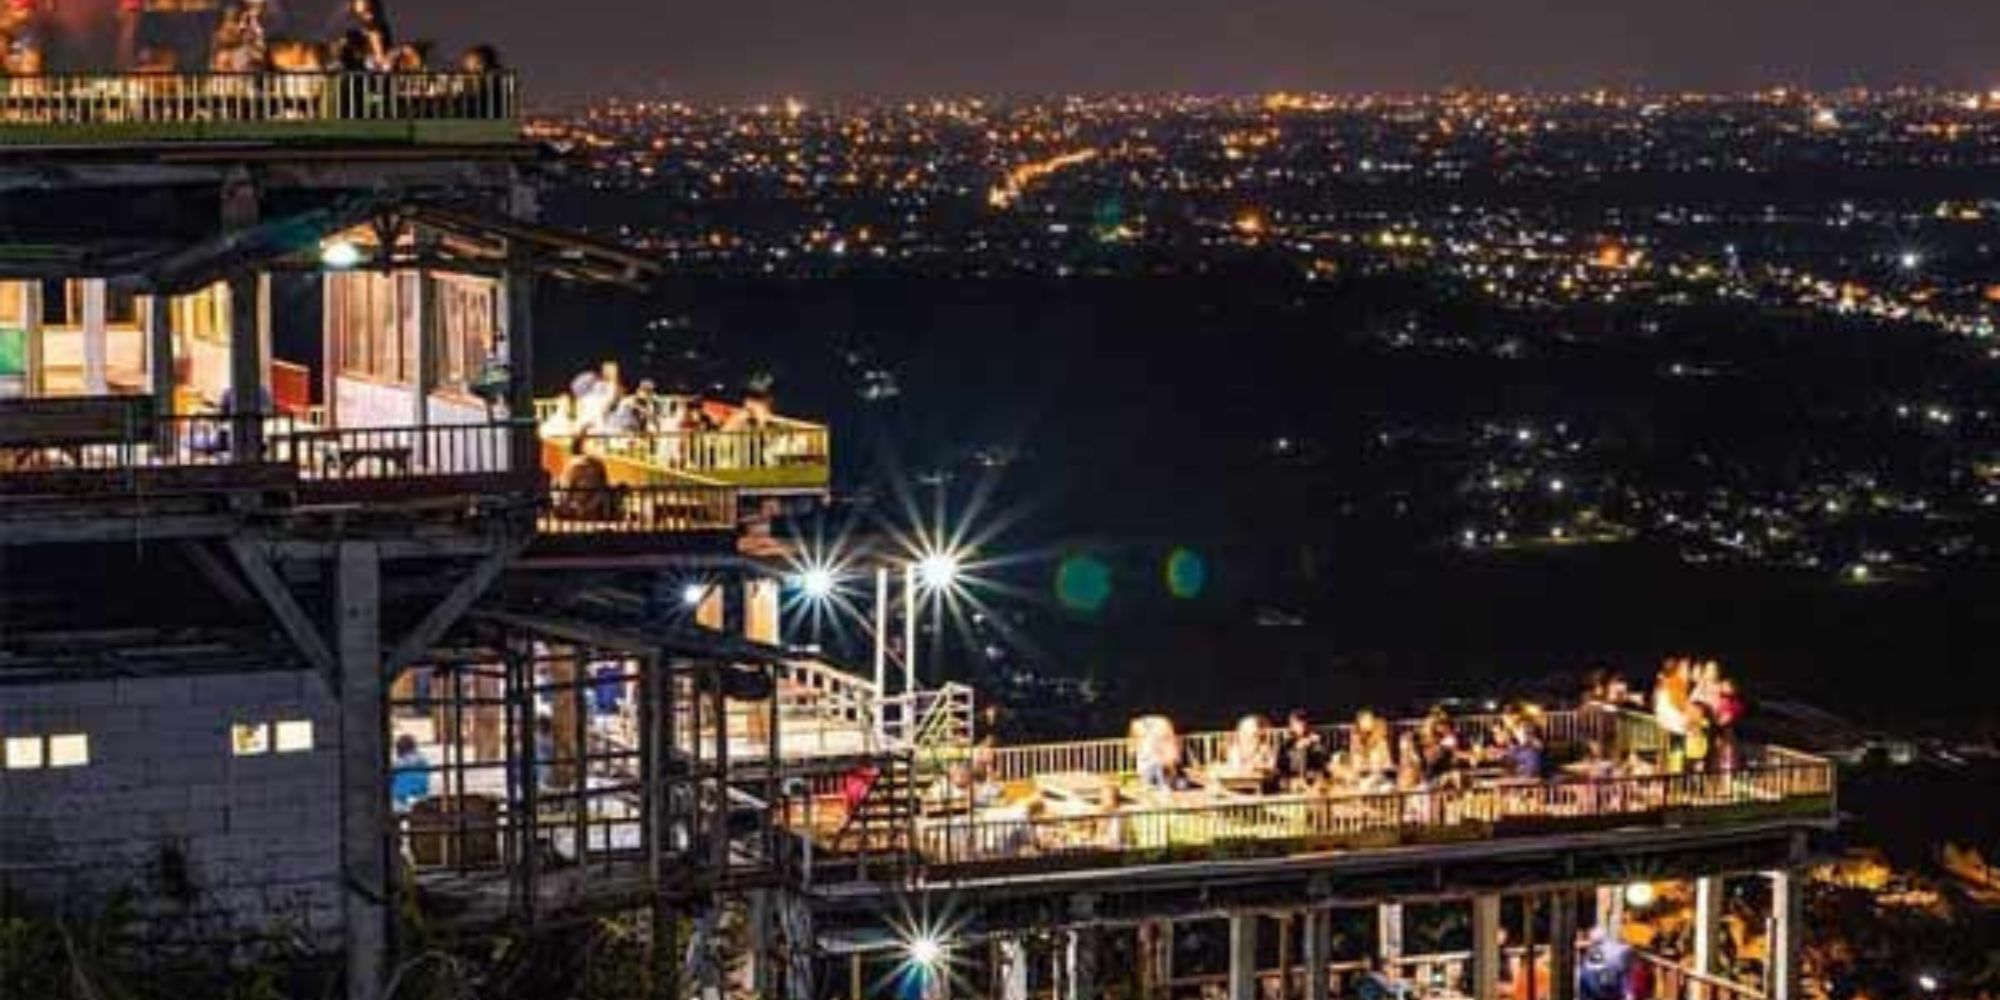 Liburan Enak Melepas Penat di Bukit Bintang Jogja - Harga Tiket, Kuliner, dan Akomodasi Yang Ditawarkan